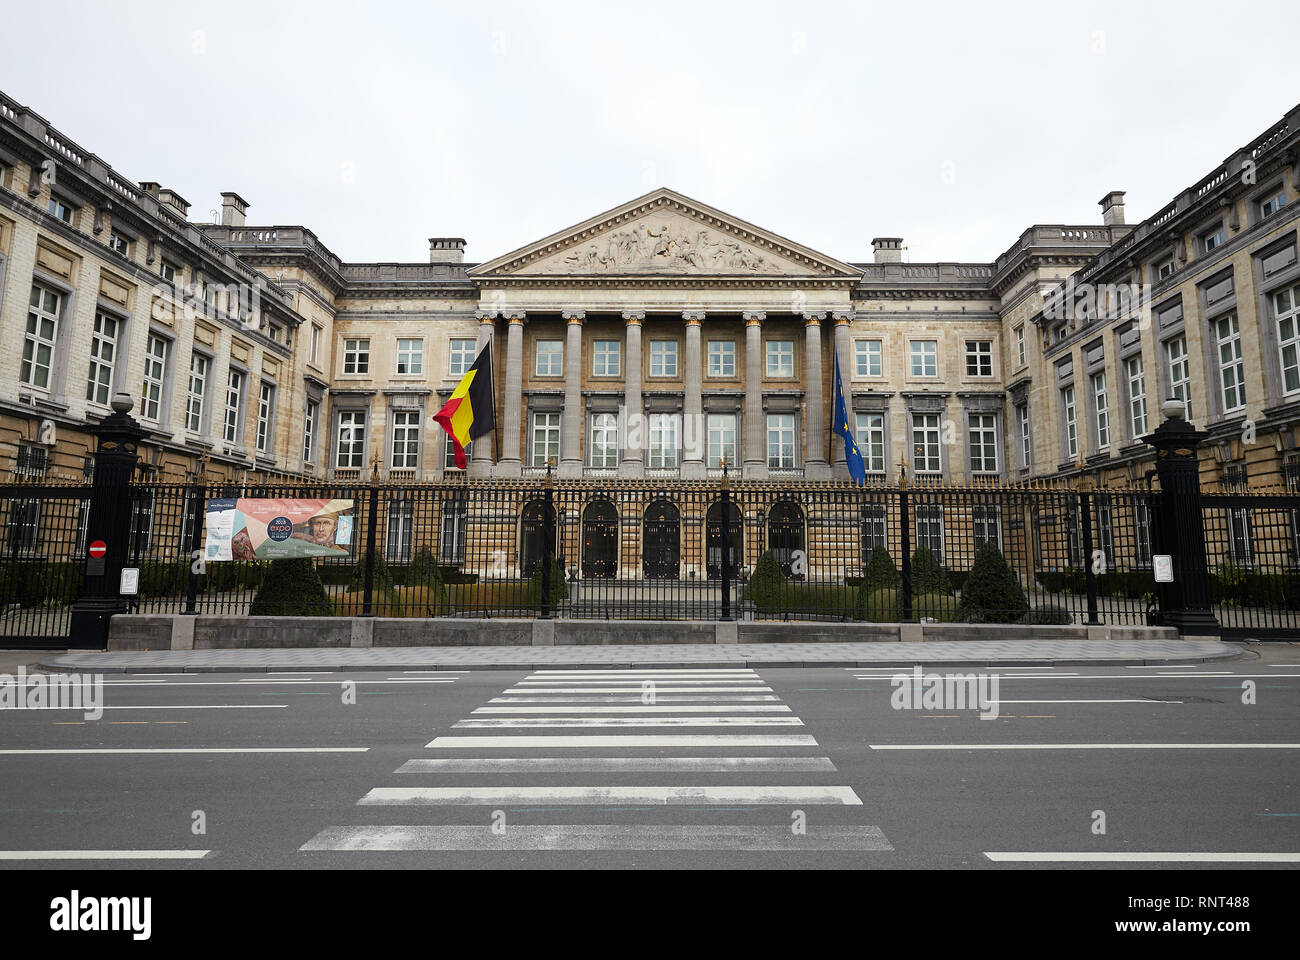 15.12.2018, Bruxelles, Bruxellescapitale, Belgio - Il Palazzo della Nazione, sede del parlamento federale belga. 00R181215D042CAROEX.JPG [modello REL Foto Stock